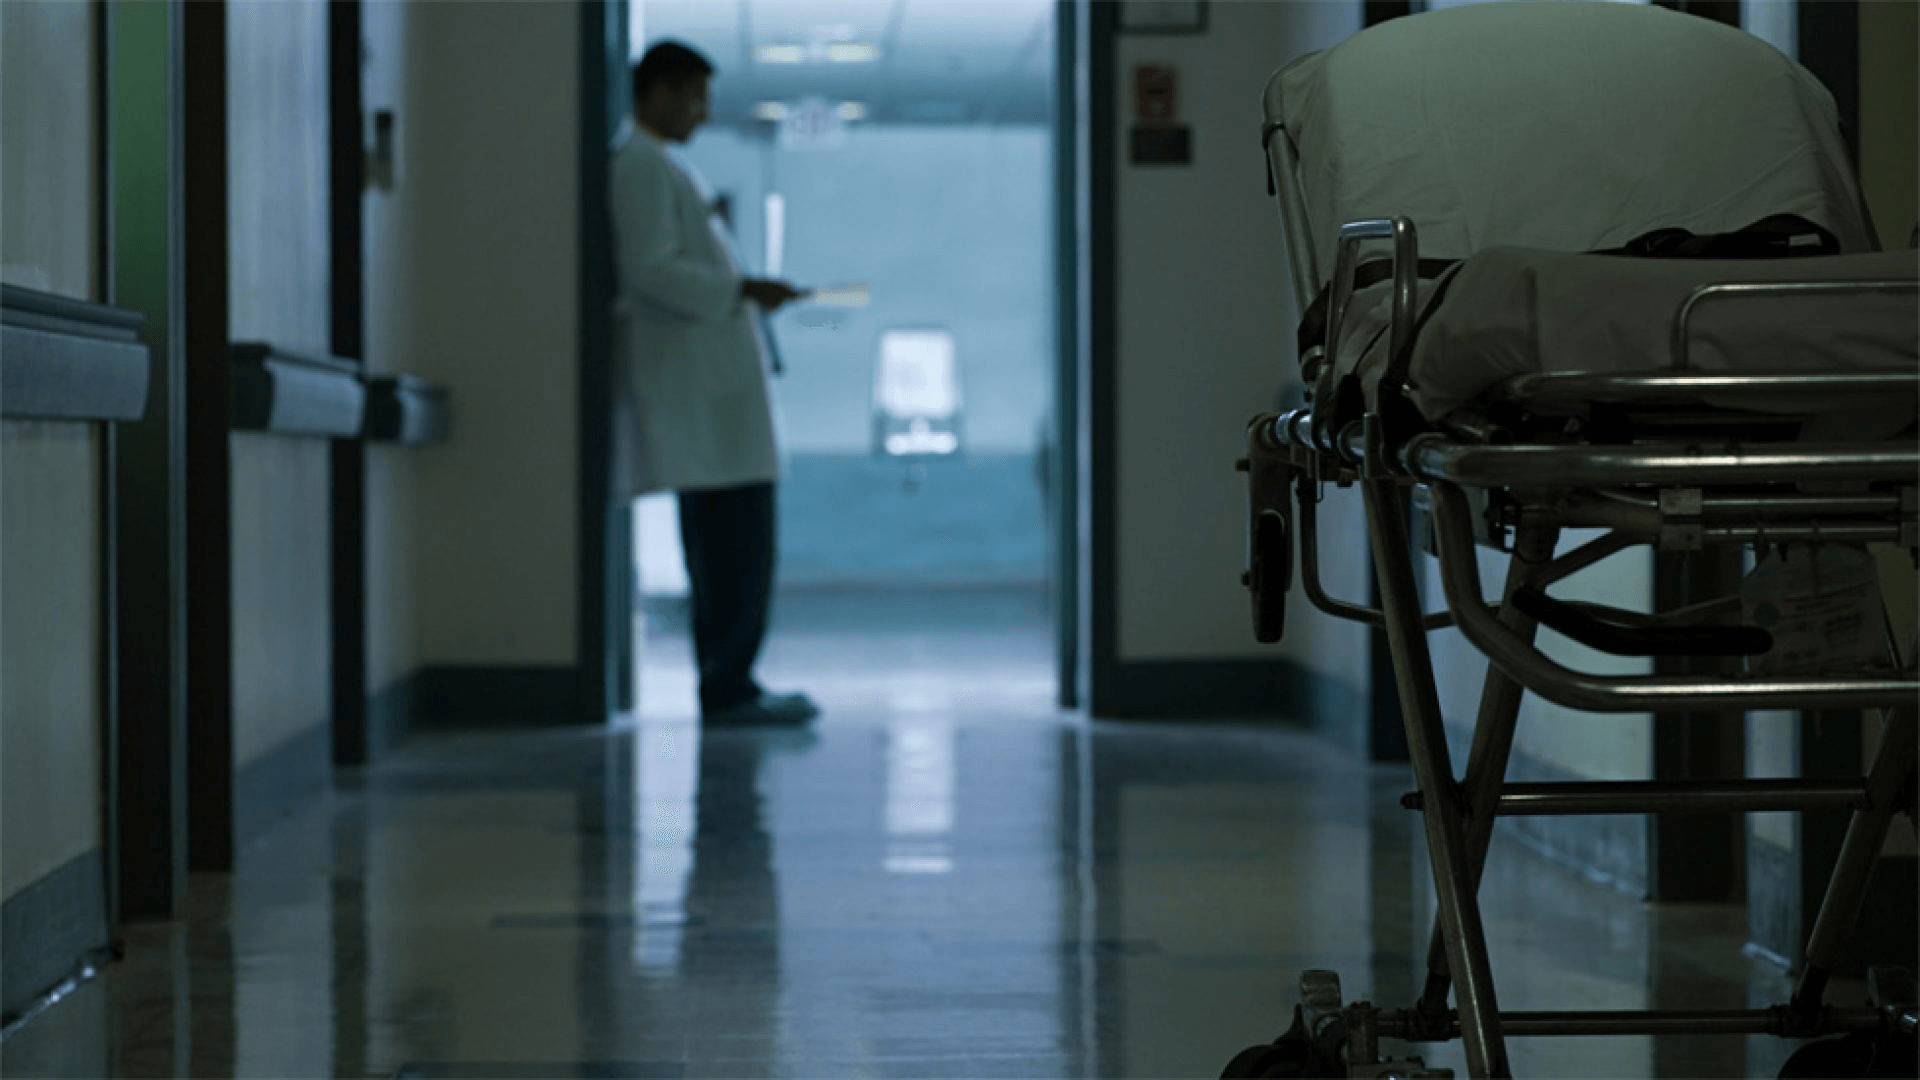 Turno di notte in ospedale: un medico guarda il cellulare in una corsia vuota.